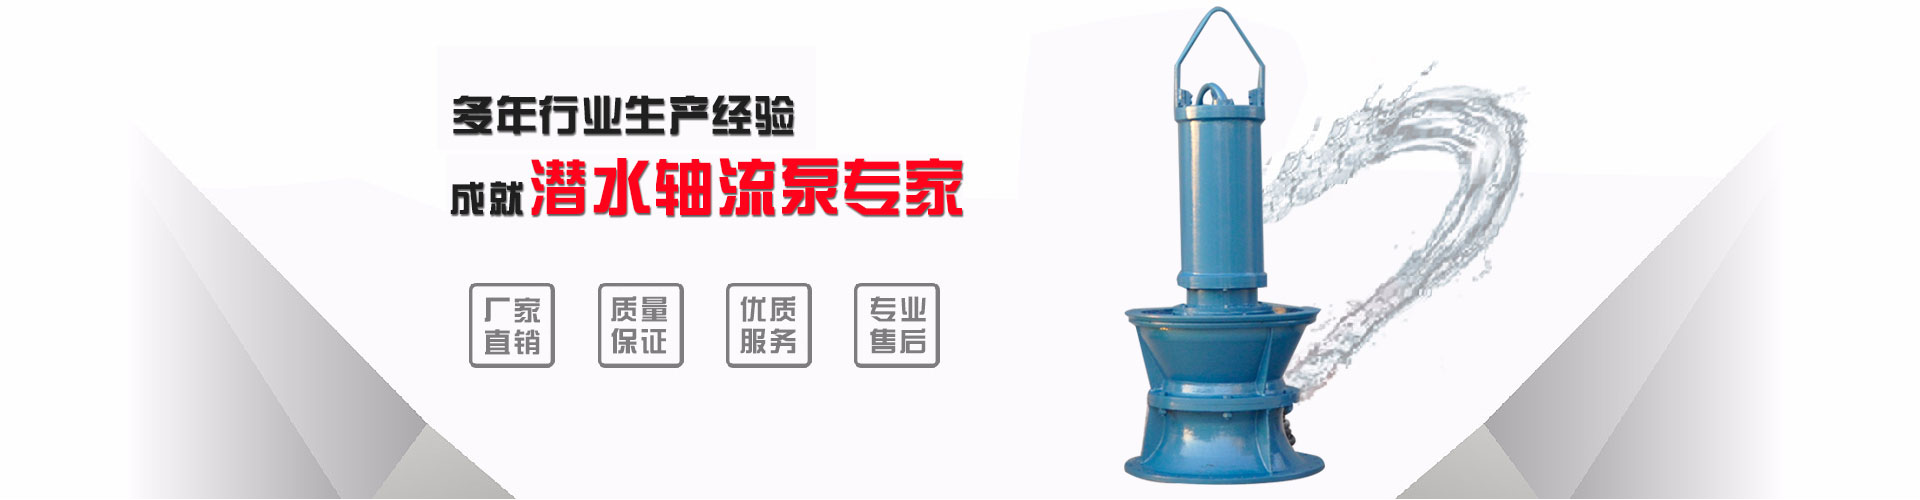 安徽型号浮筒泵厂_荆州浮筒泵